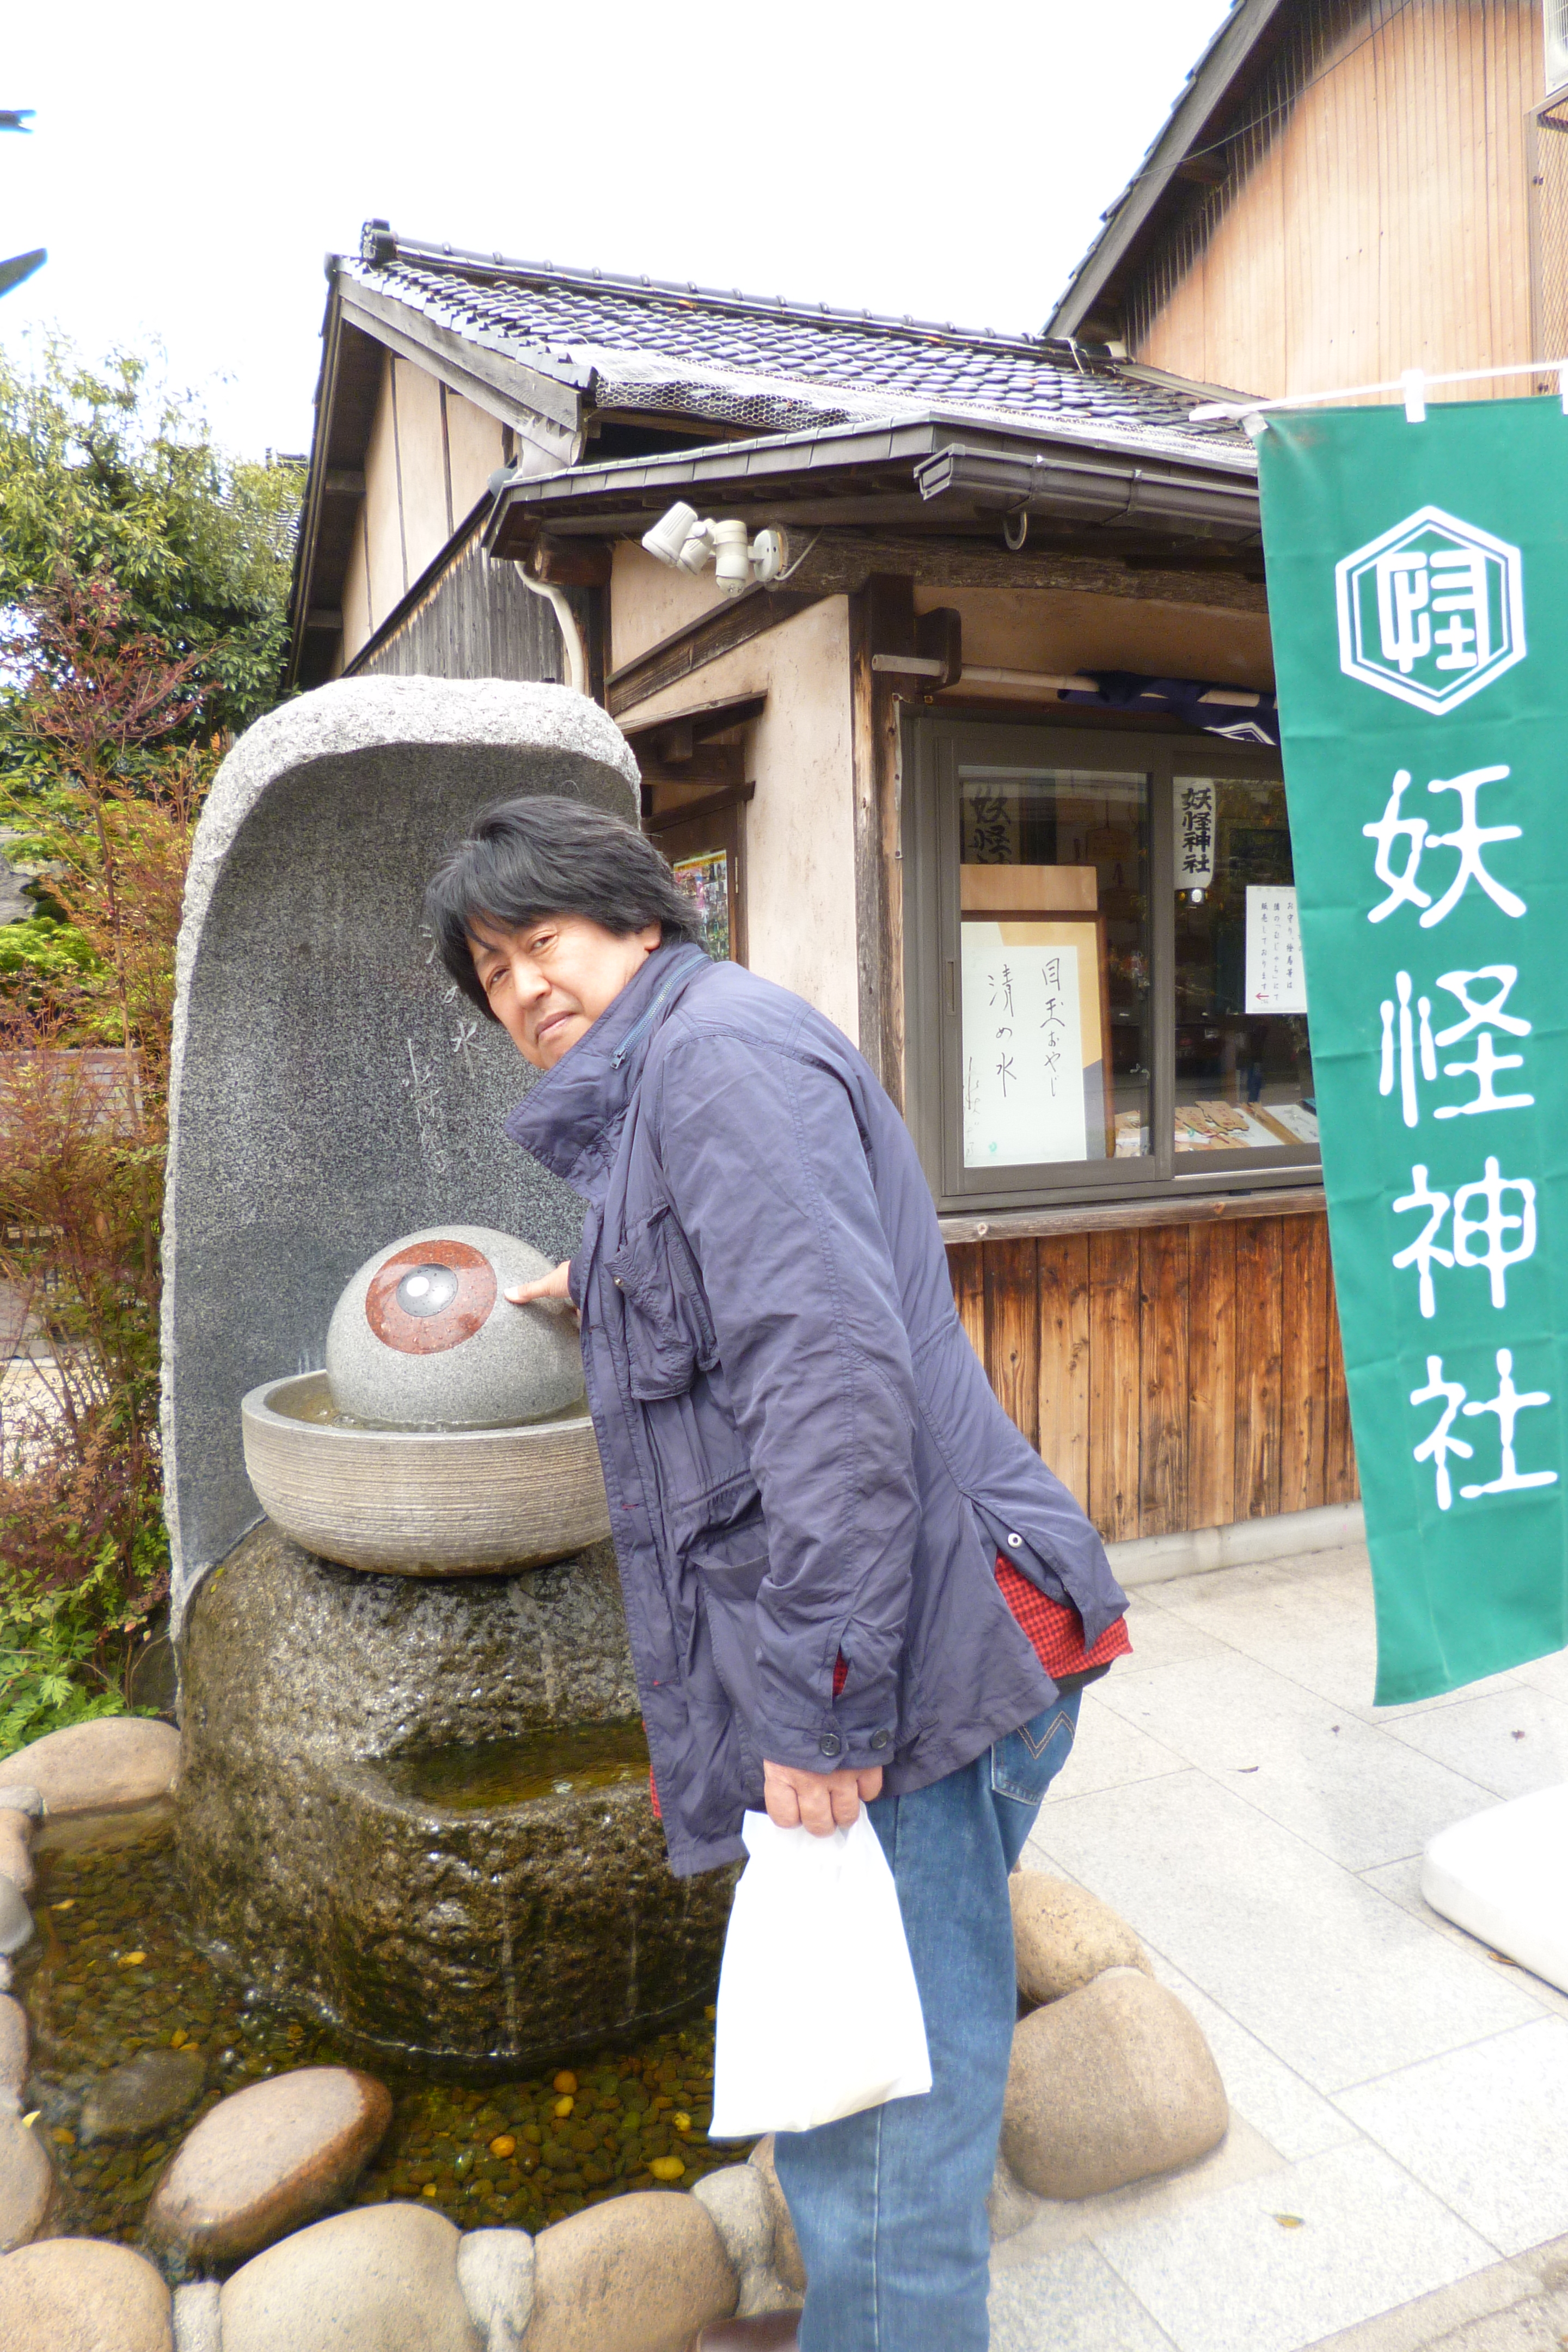 米子への移動の途中に境港へ立ち寄りました。妖怪神社で目玉おやじと記念のショット。